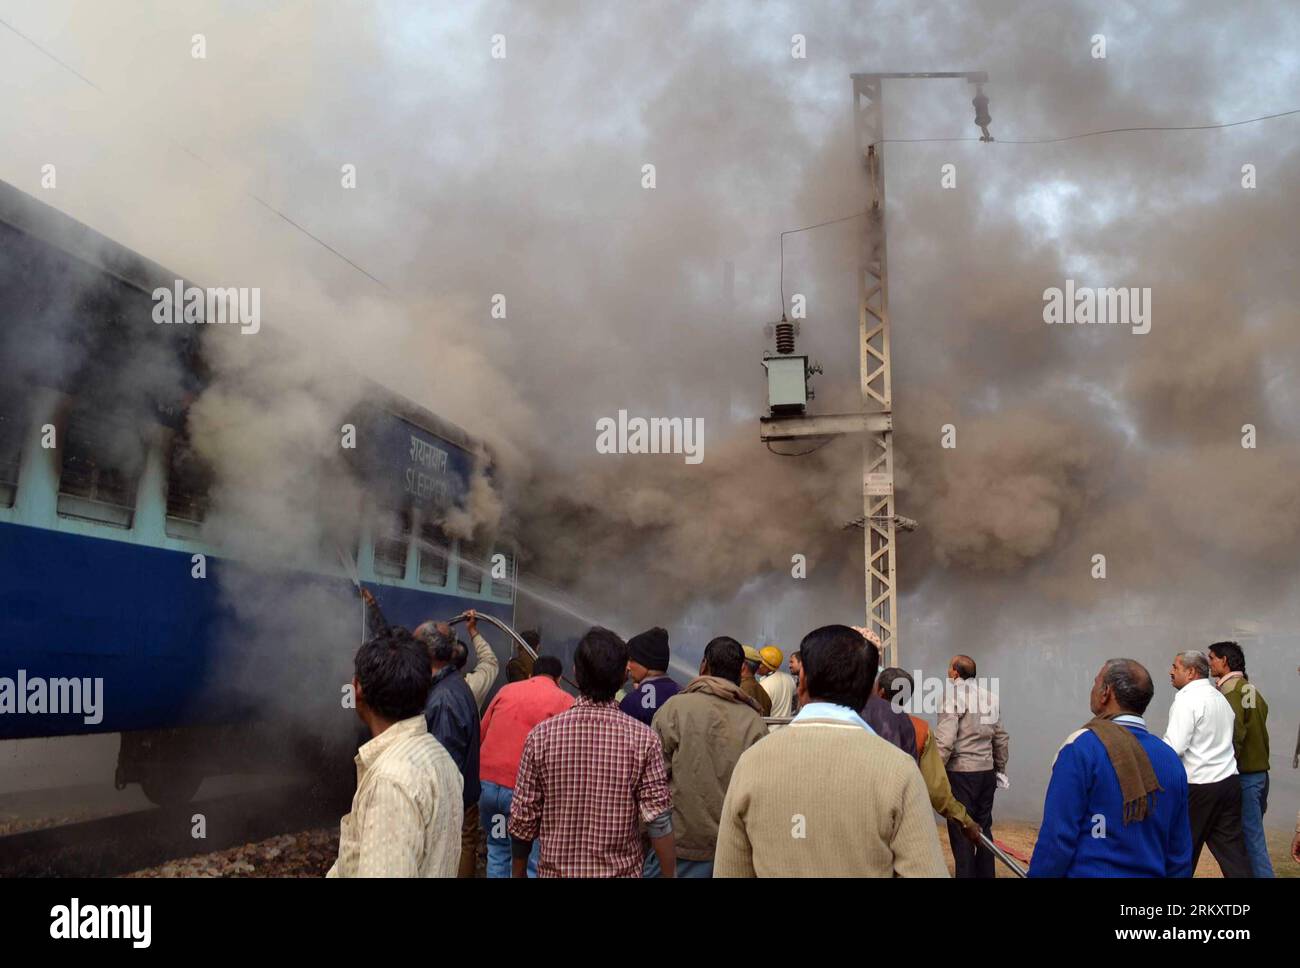 Bildnummer: 59084101  Datum: 15.01.2013  Copyright: imago/Xinhua (130115) -- MATHURA, Jan. 15, 2013 (Xinhua) -- Firemen try to douse fire after Mathura Allahabad Express train caught fire at Mathura railway station, India, Jan. 15, 2013. Two coaches were gutted, but no casualty has been reported. (Xinhua/Stringer)(rh) INDIA-MATHURA-TRAIN-FIRE PUBLICATIONxNOTxINxCHN Gesellschaft Verkehr Zug Bahn Feuer Brand Zugunglück x0x xrj 2013 quer      59084101 Date 15 01 2013 Copyright Imago XINHUA  Mathura Jan 15 2013 XINHUA firemen Try to douse Fire After Mathura Allahabad Shipping Train Caught Fire AT Stock Photo